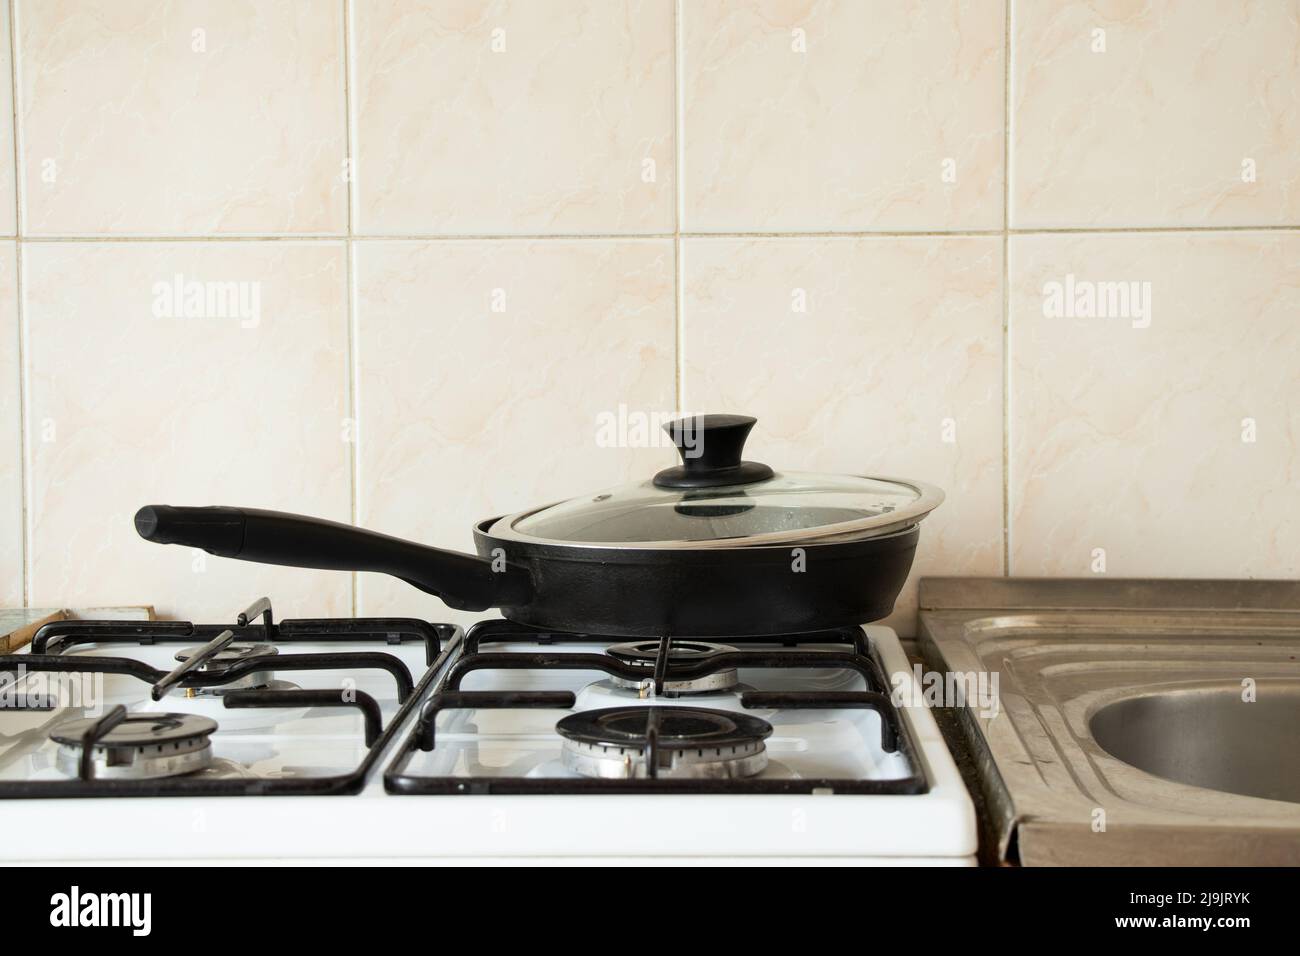 Une poêle repose sur un poêle à gaz à la maison dans la cuisine, ustensiles de cuisine et appareils ménagers, la cuisine Banque D'Images